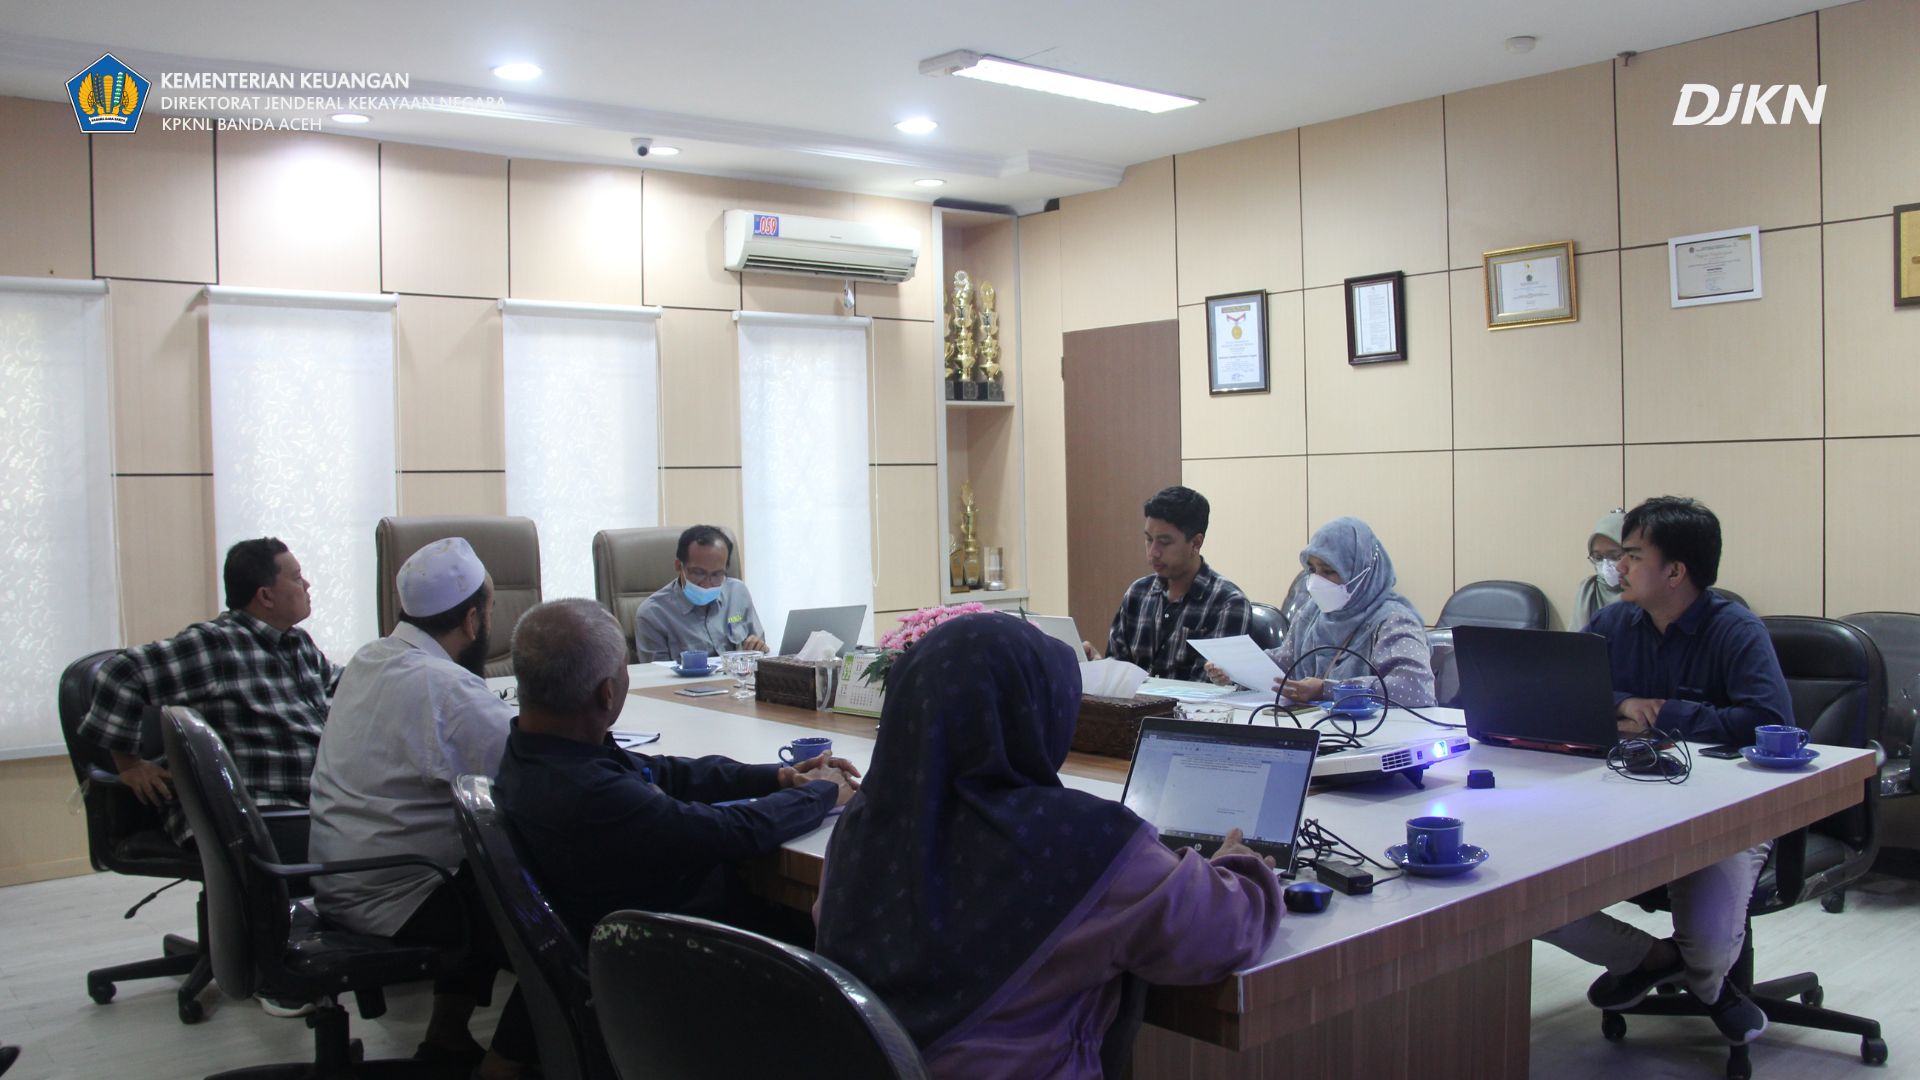  Tuntas! KPKNL Banda Aceh Berhasil Meraih Semua IKU Hijau